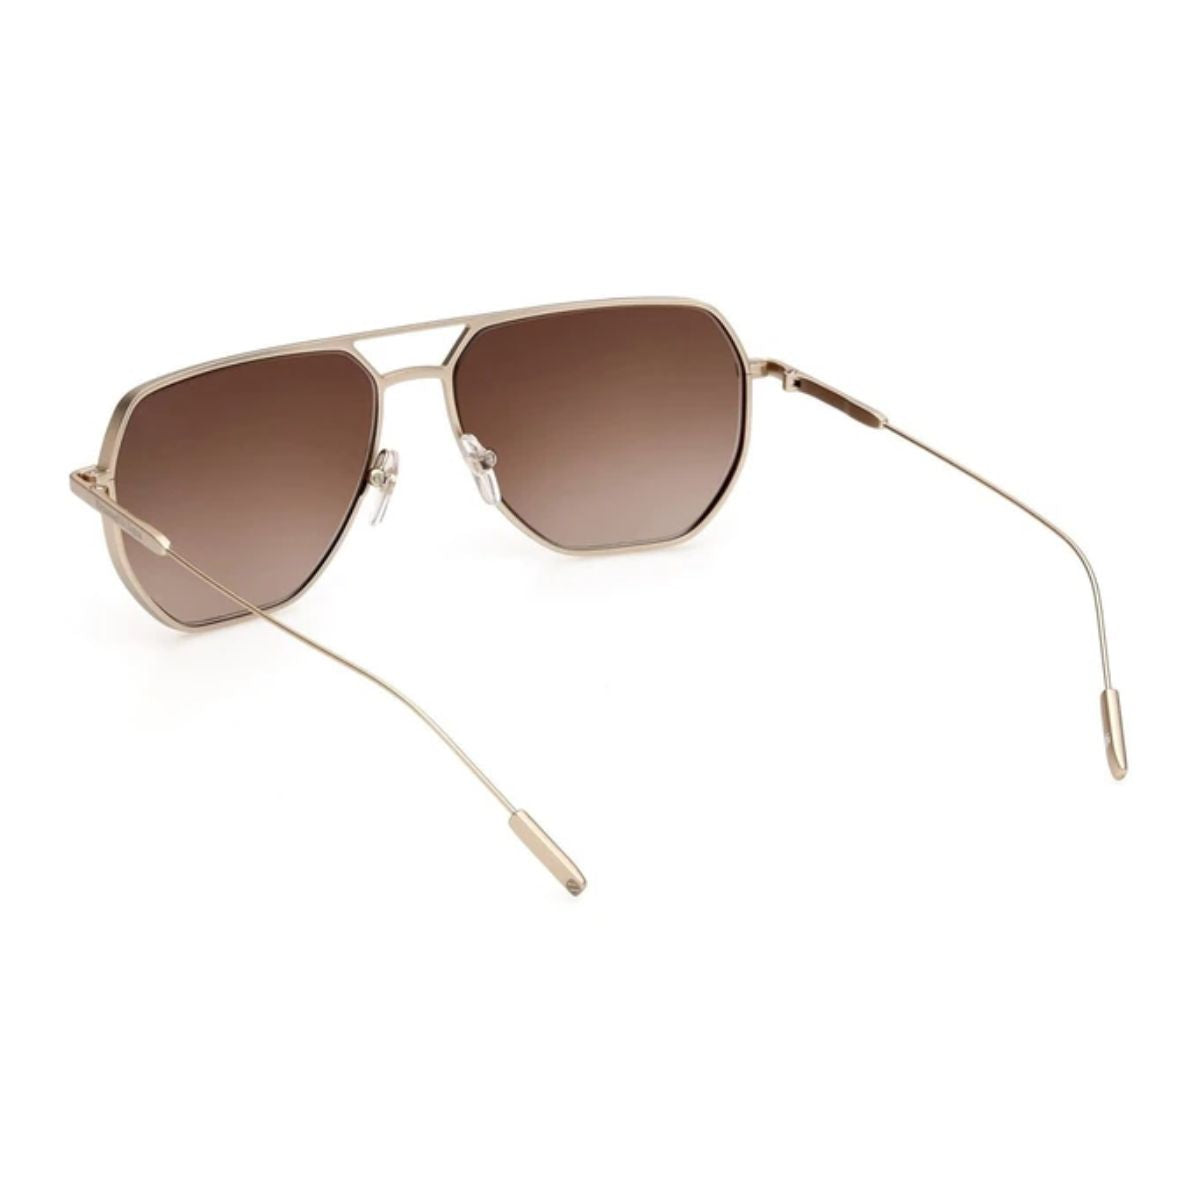 "Zegna EZ0207 32G Sunglasses For Mens At Optorium"